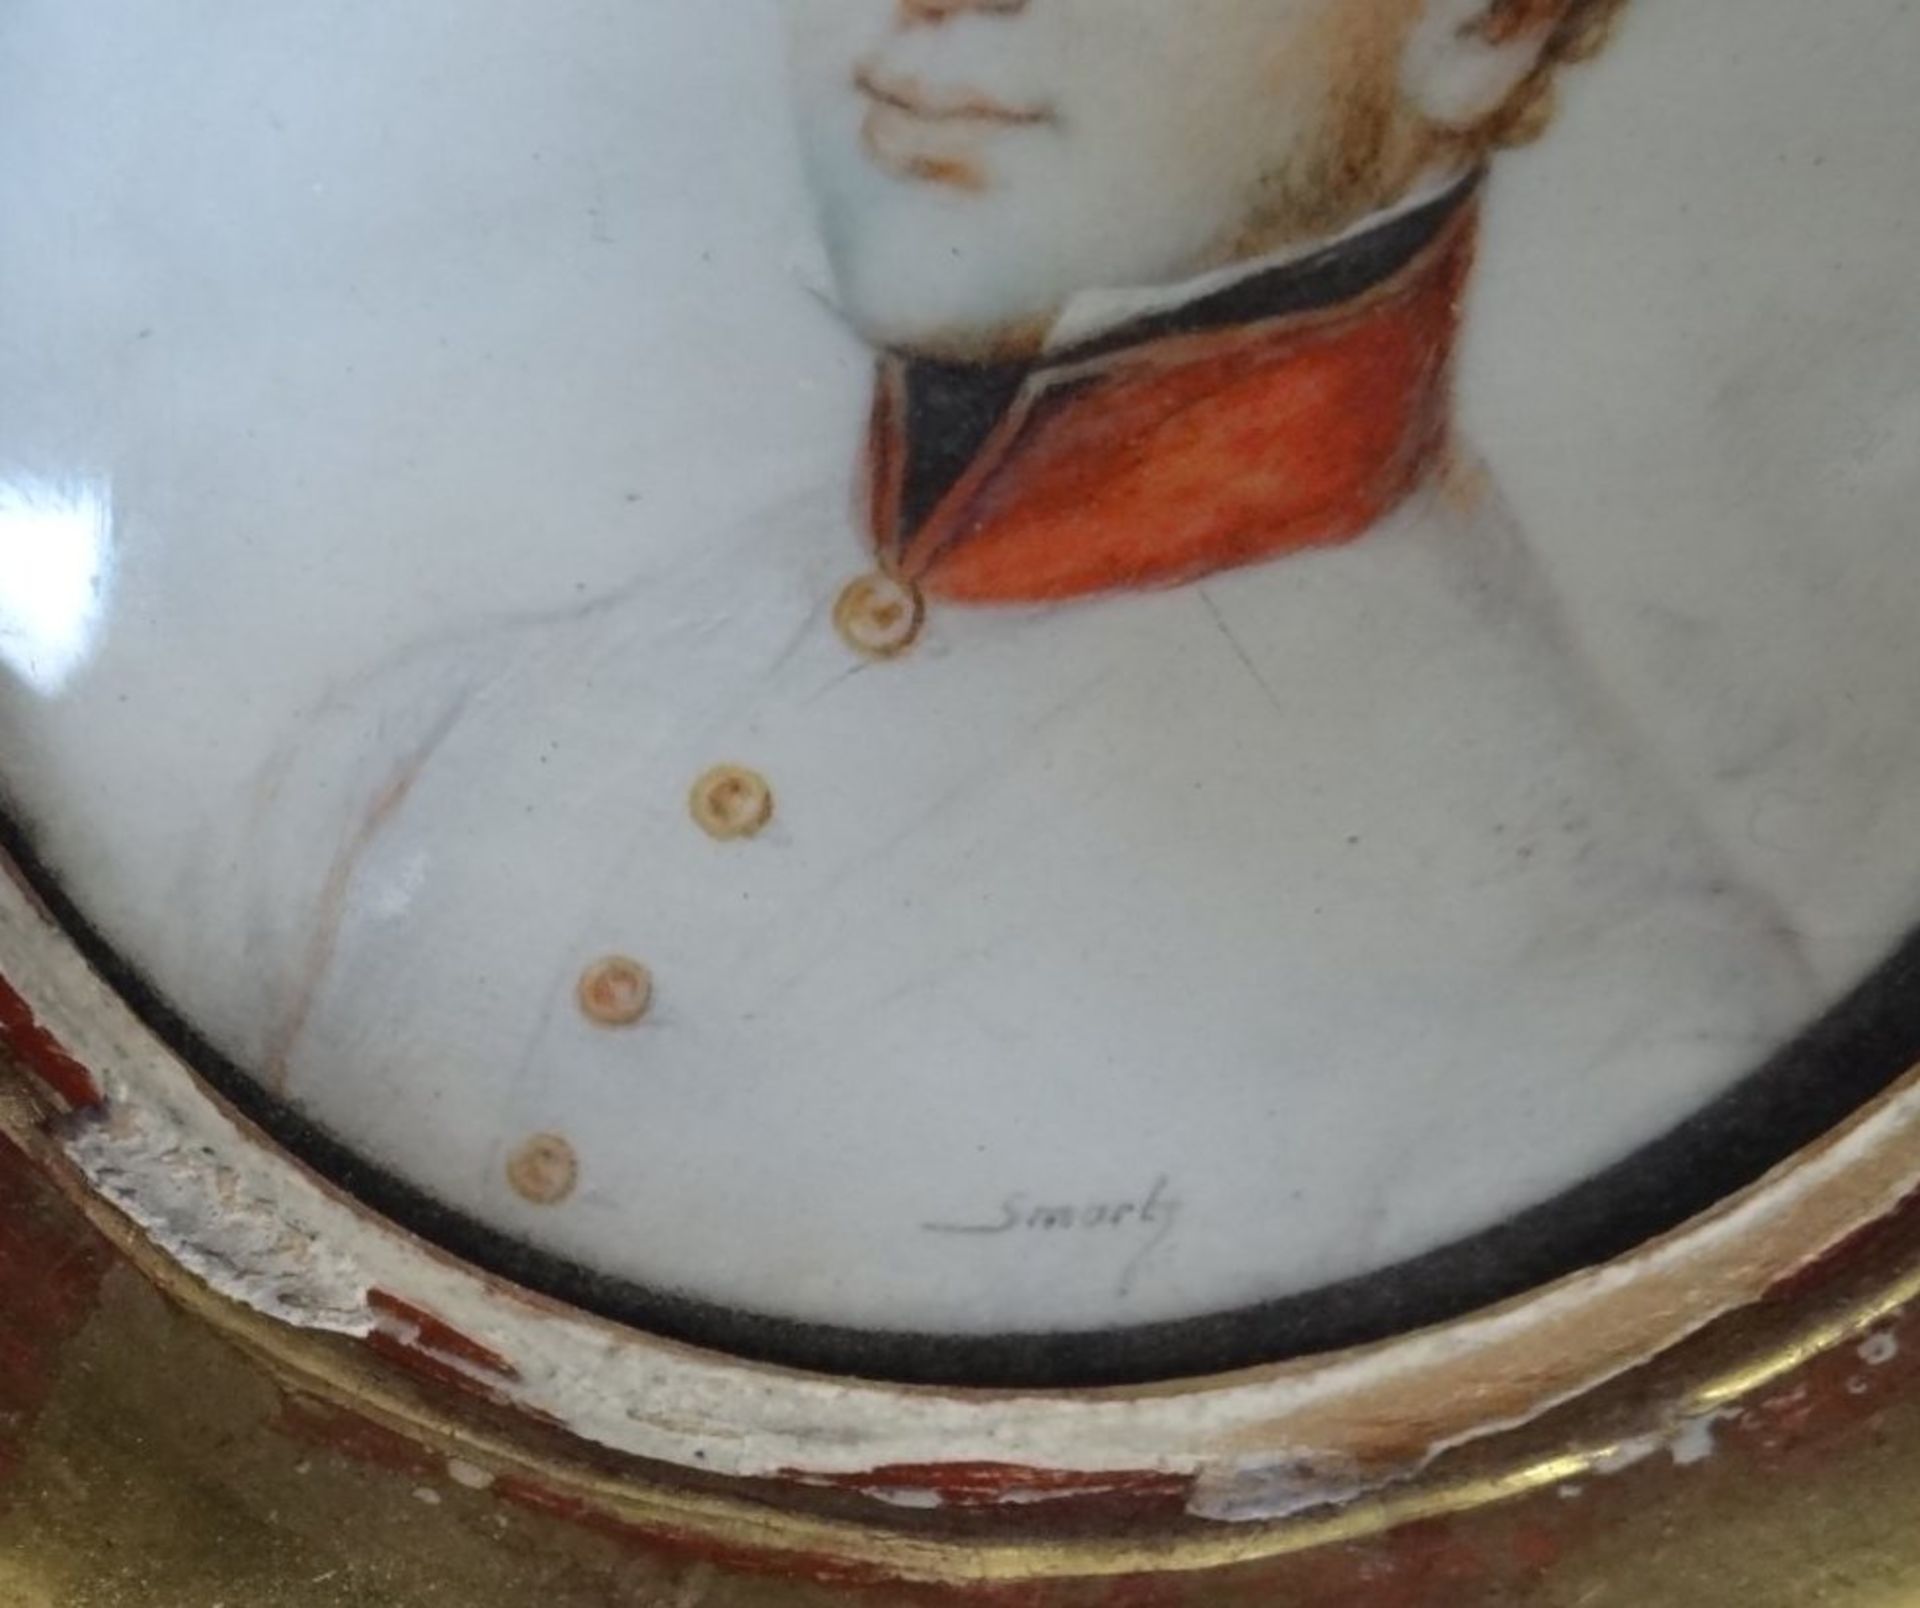 Smartz sign. Miniatur-Portrait eines jungen Offiziers, beschädigt gerahmt, RG 12x12 c - Bild 4 aus 5